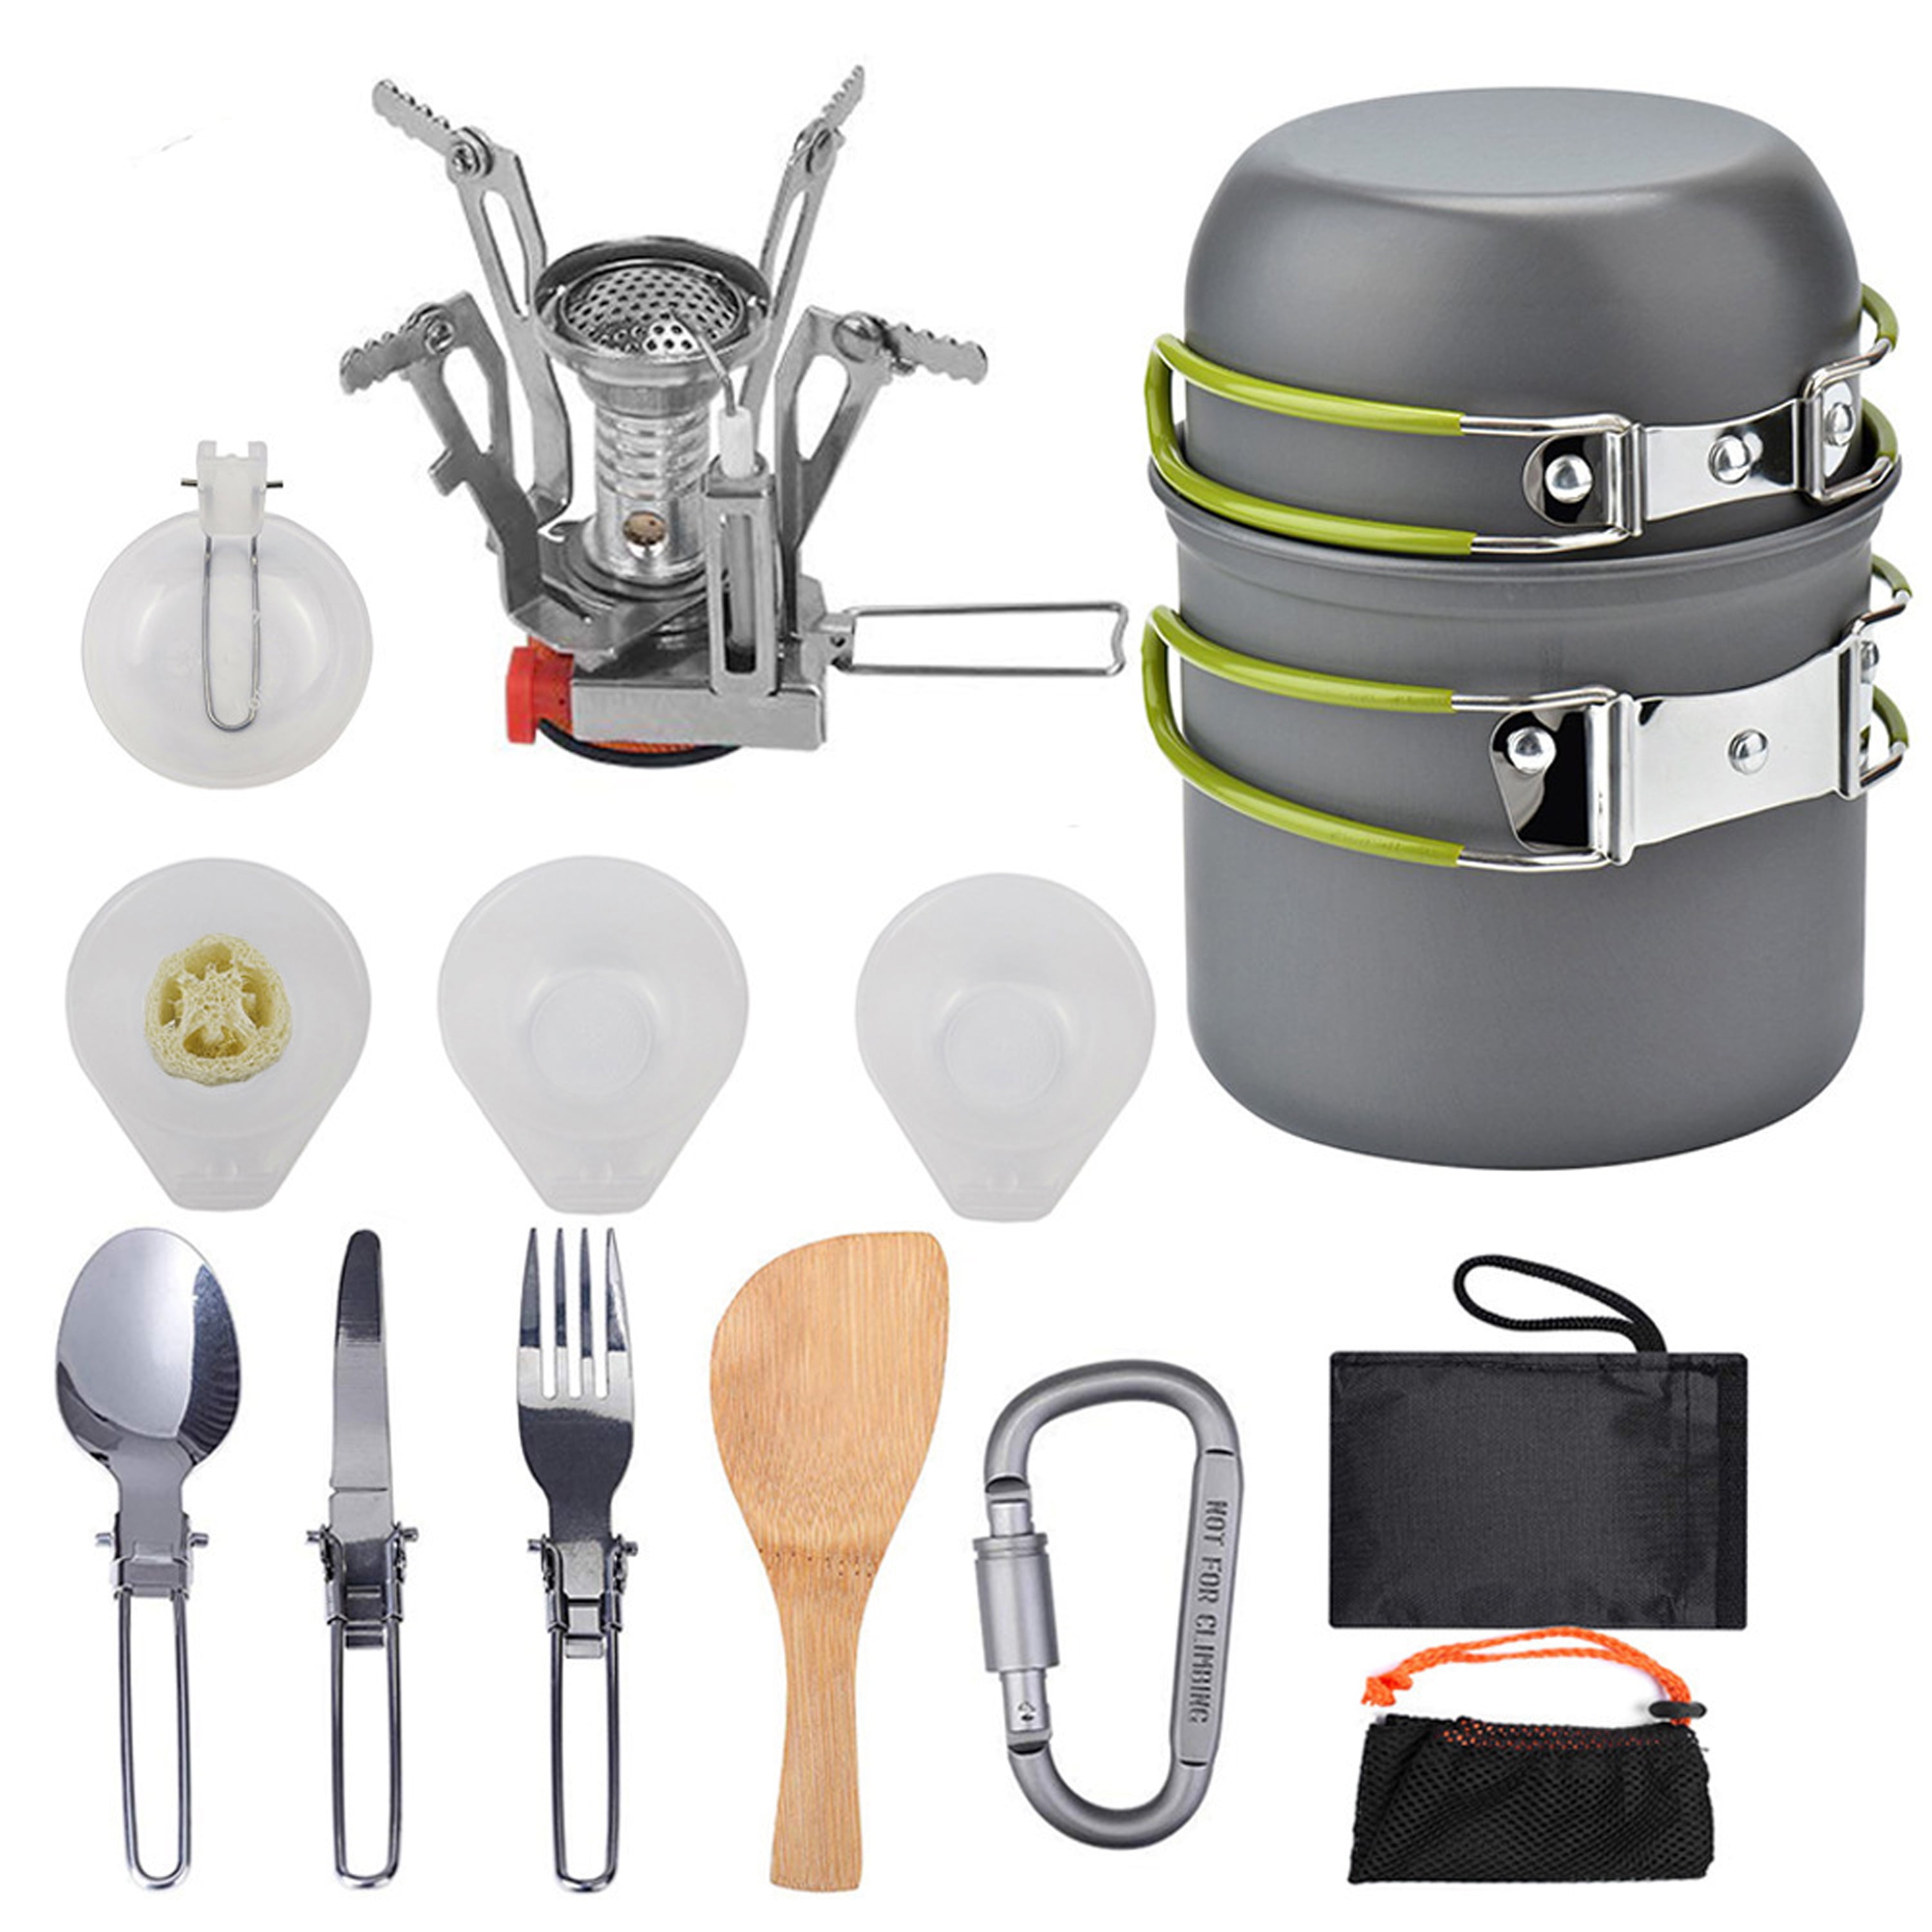 9pcs Camping Cookware Mess Kit Lightweight Pot Pan Bowl Spoon Kit for 